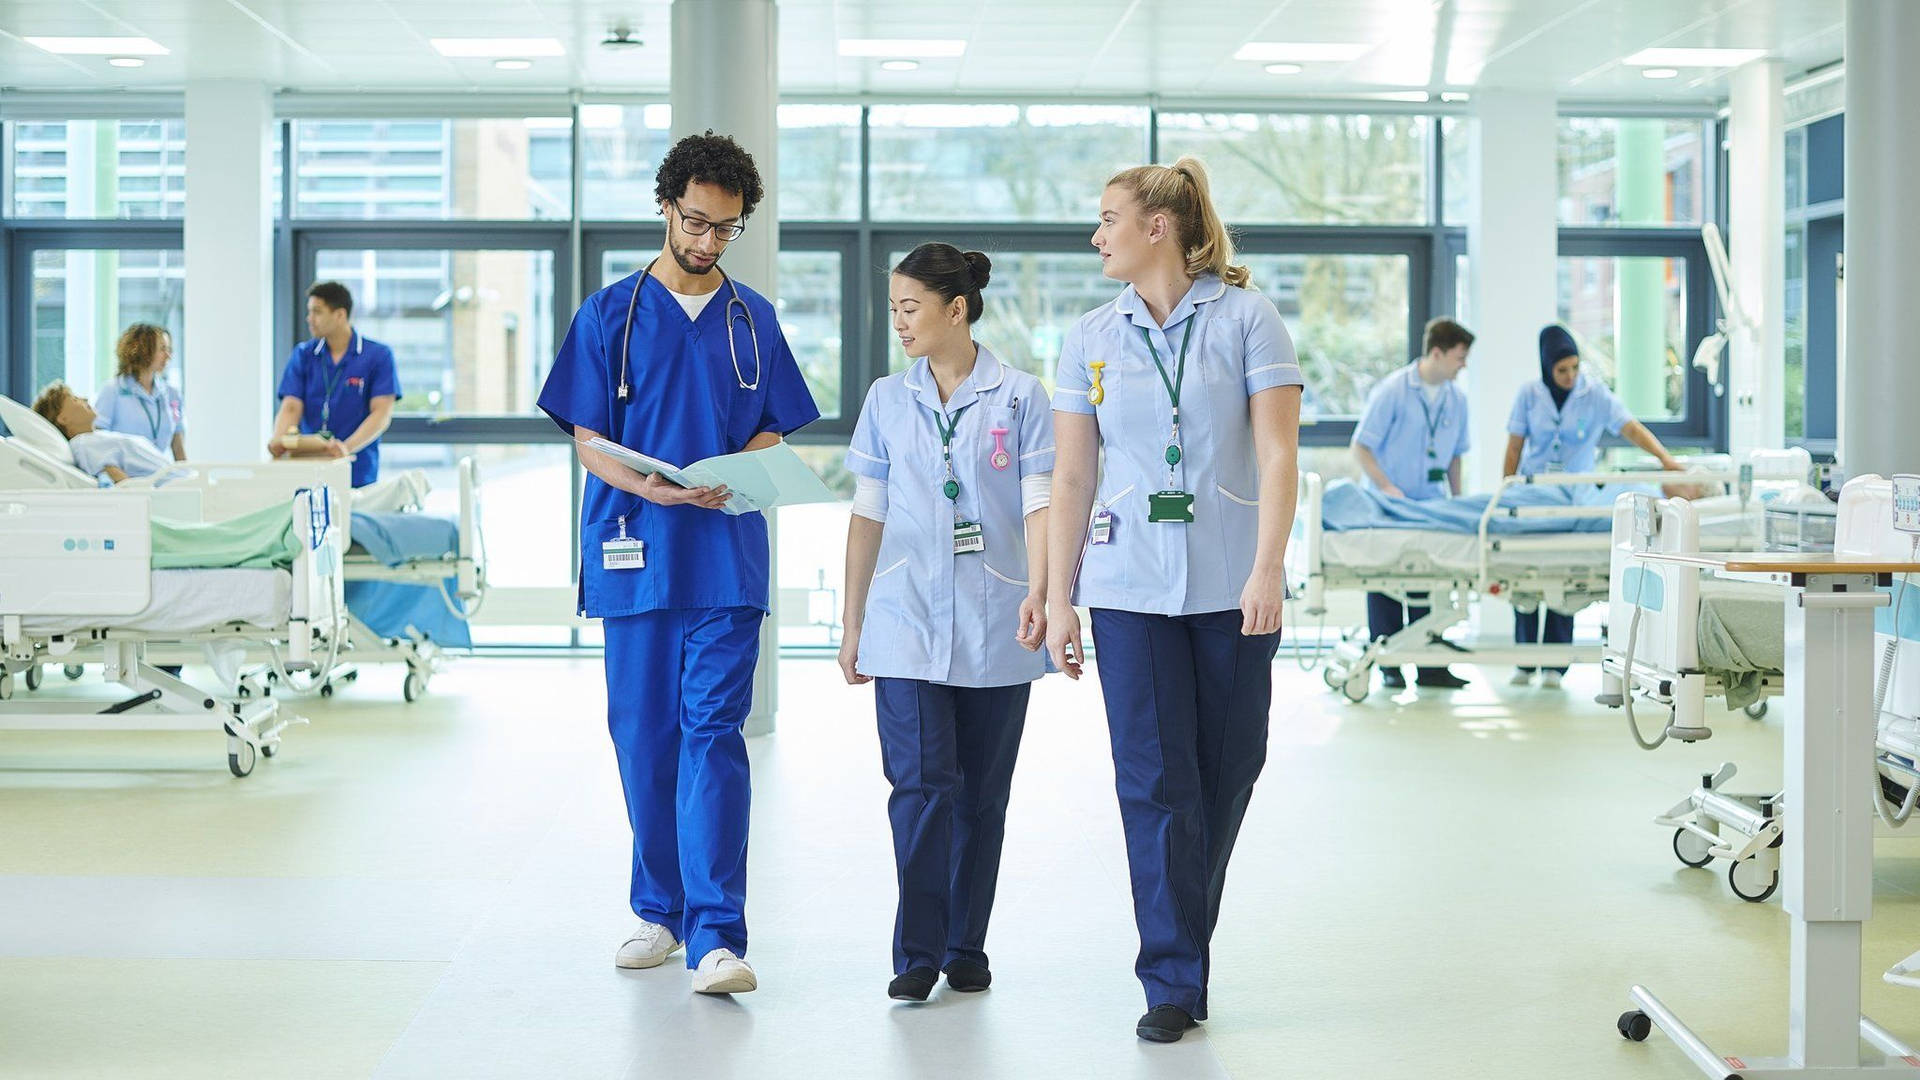 Tapetet Nurser Emergency Room er inspireret af hospitalsmiljøer. Wallpaper